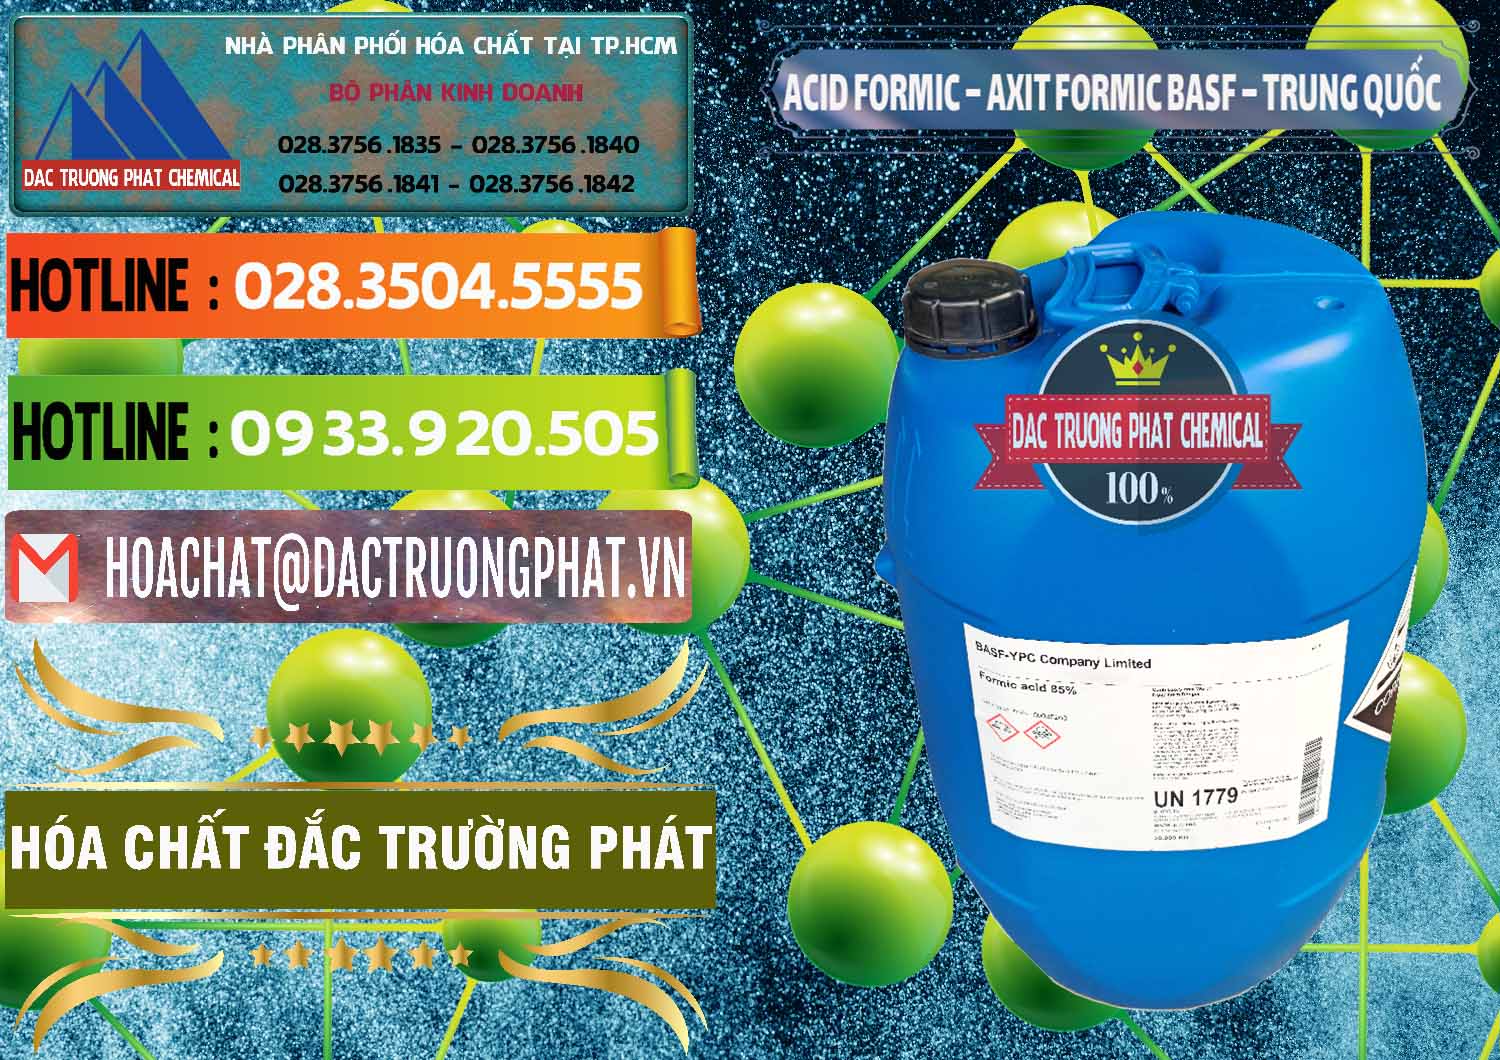 Nhập khẩu ( bán ) Acid Formic - Axit Formic BASF Trung Quốc China - 0025 - Đơn vị chuyên phân phối ( bán ) hóa chất tại TP.HCM - cungcaphoachat.com.vn